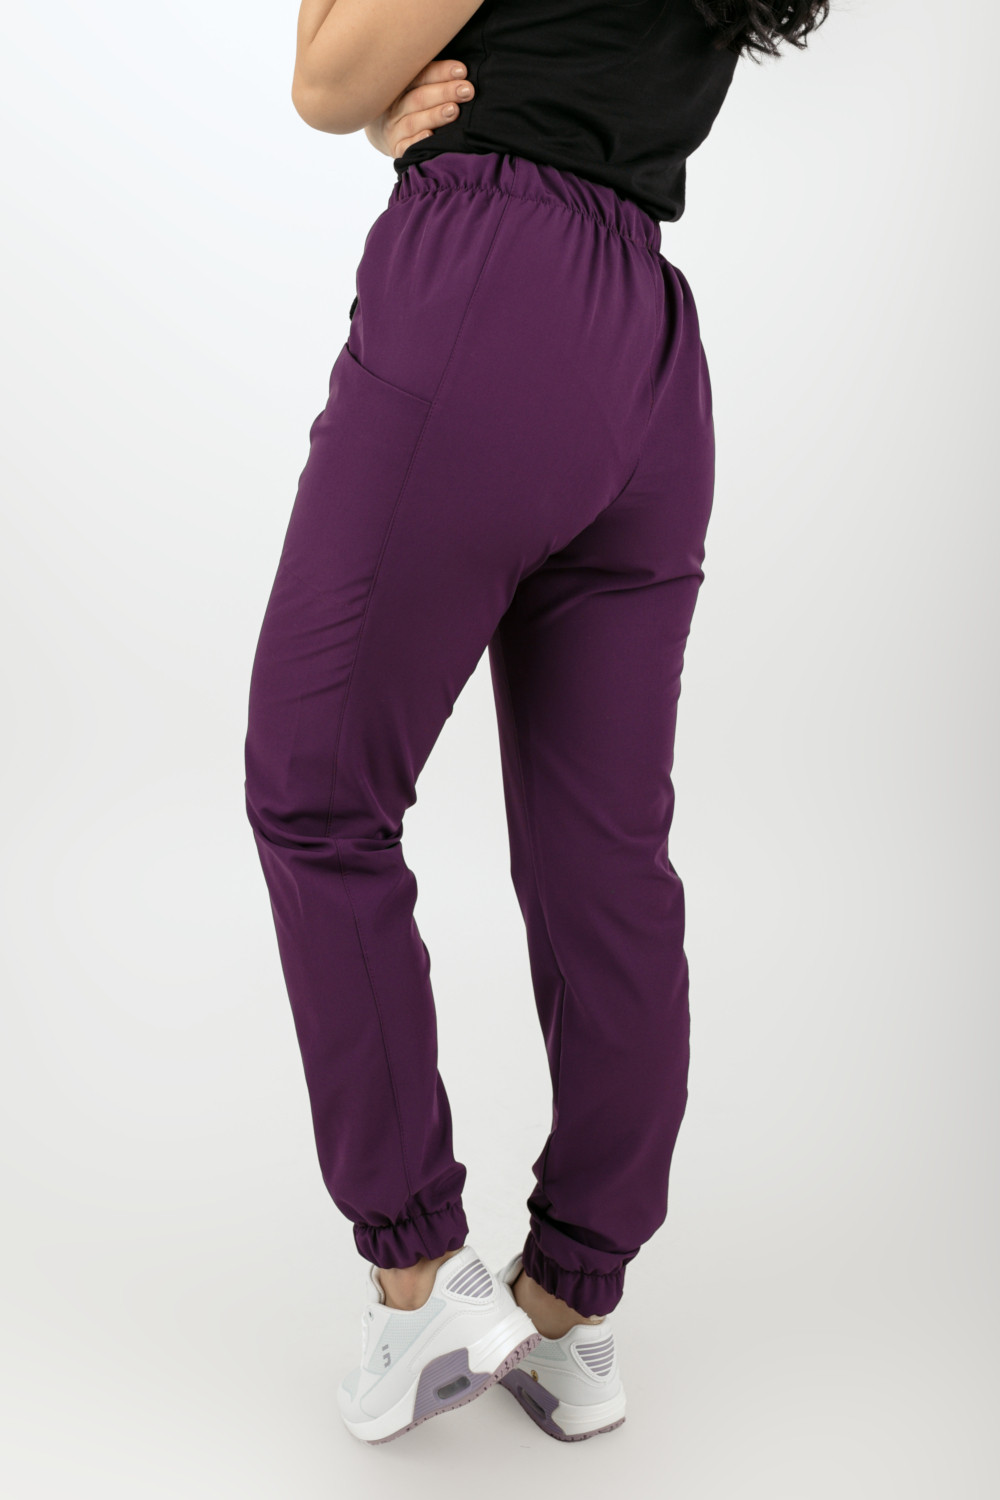 M-200XPG Elastyczne spodnie joggery medyczne damskie scrubsy fioletowy